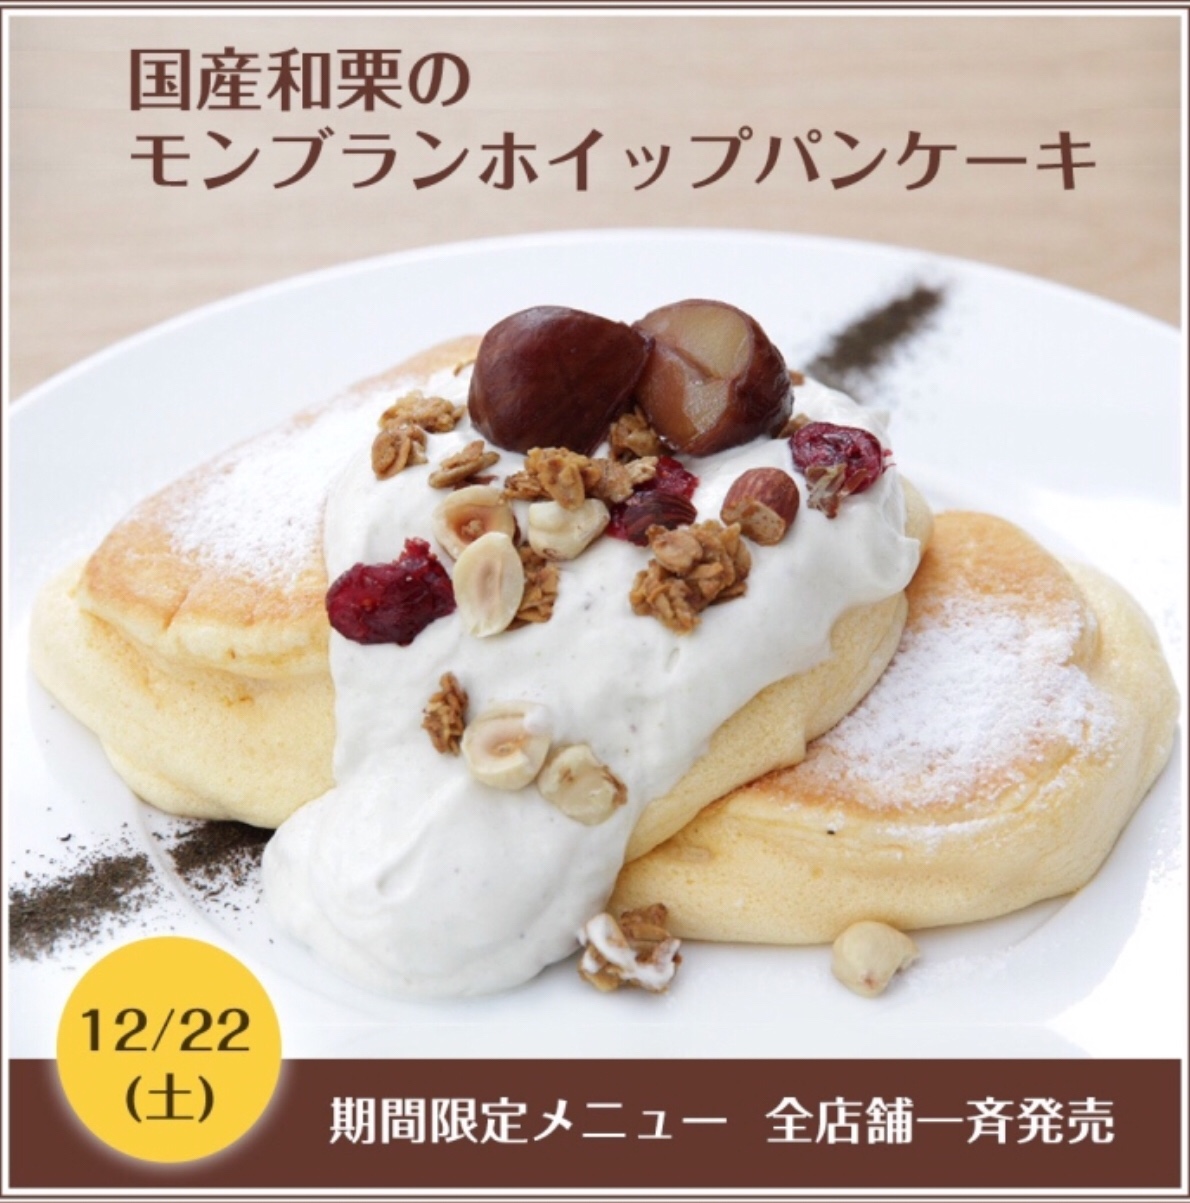 【12/22】幸せのパンケーキで和栗を使った新作パンケーキ『国産和栗のモンブランホイップパンケーキ』を発売！